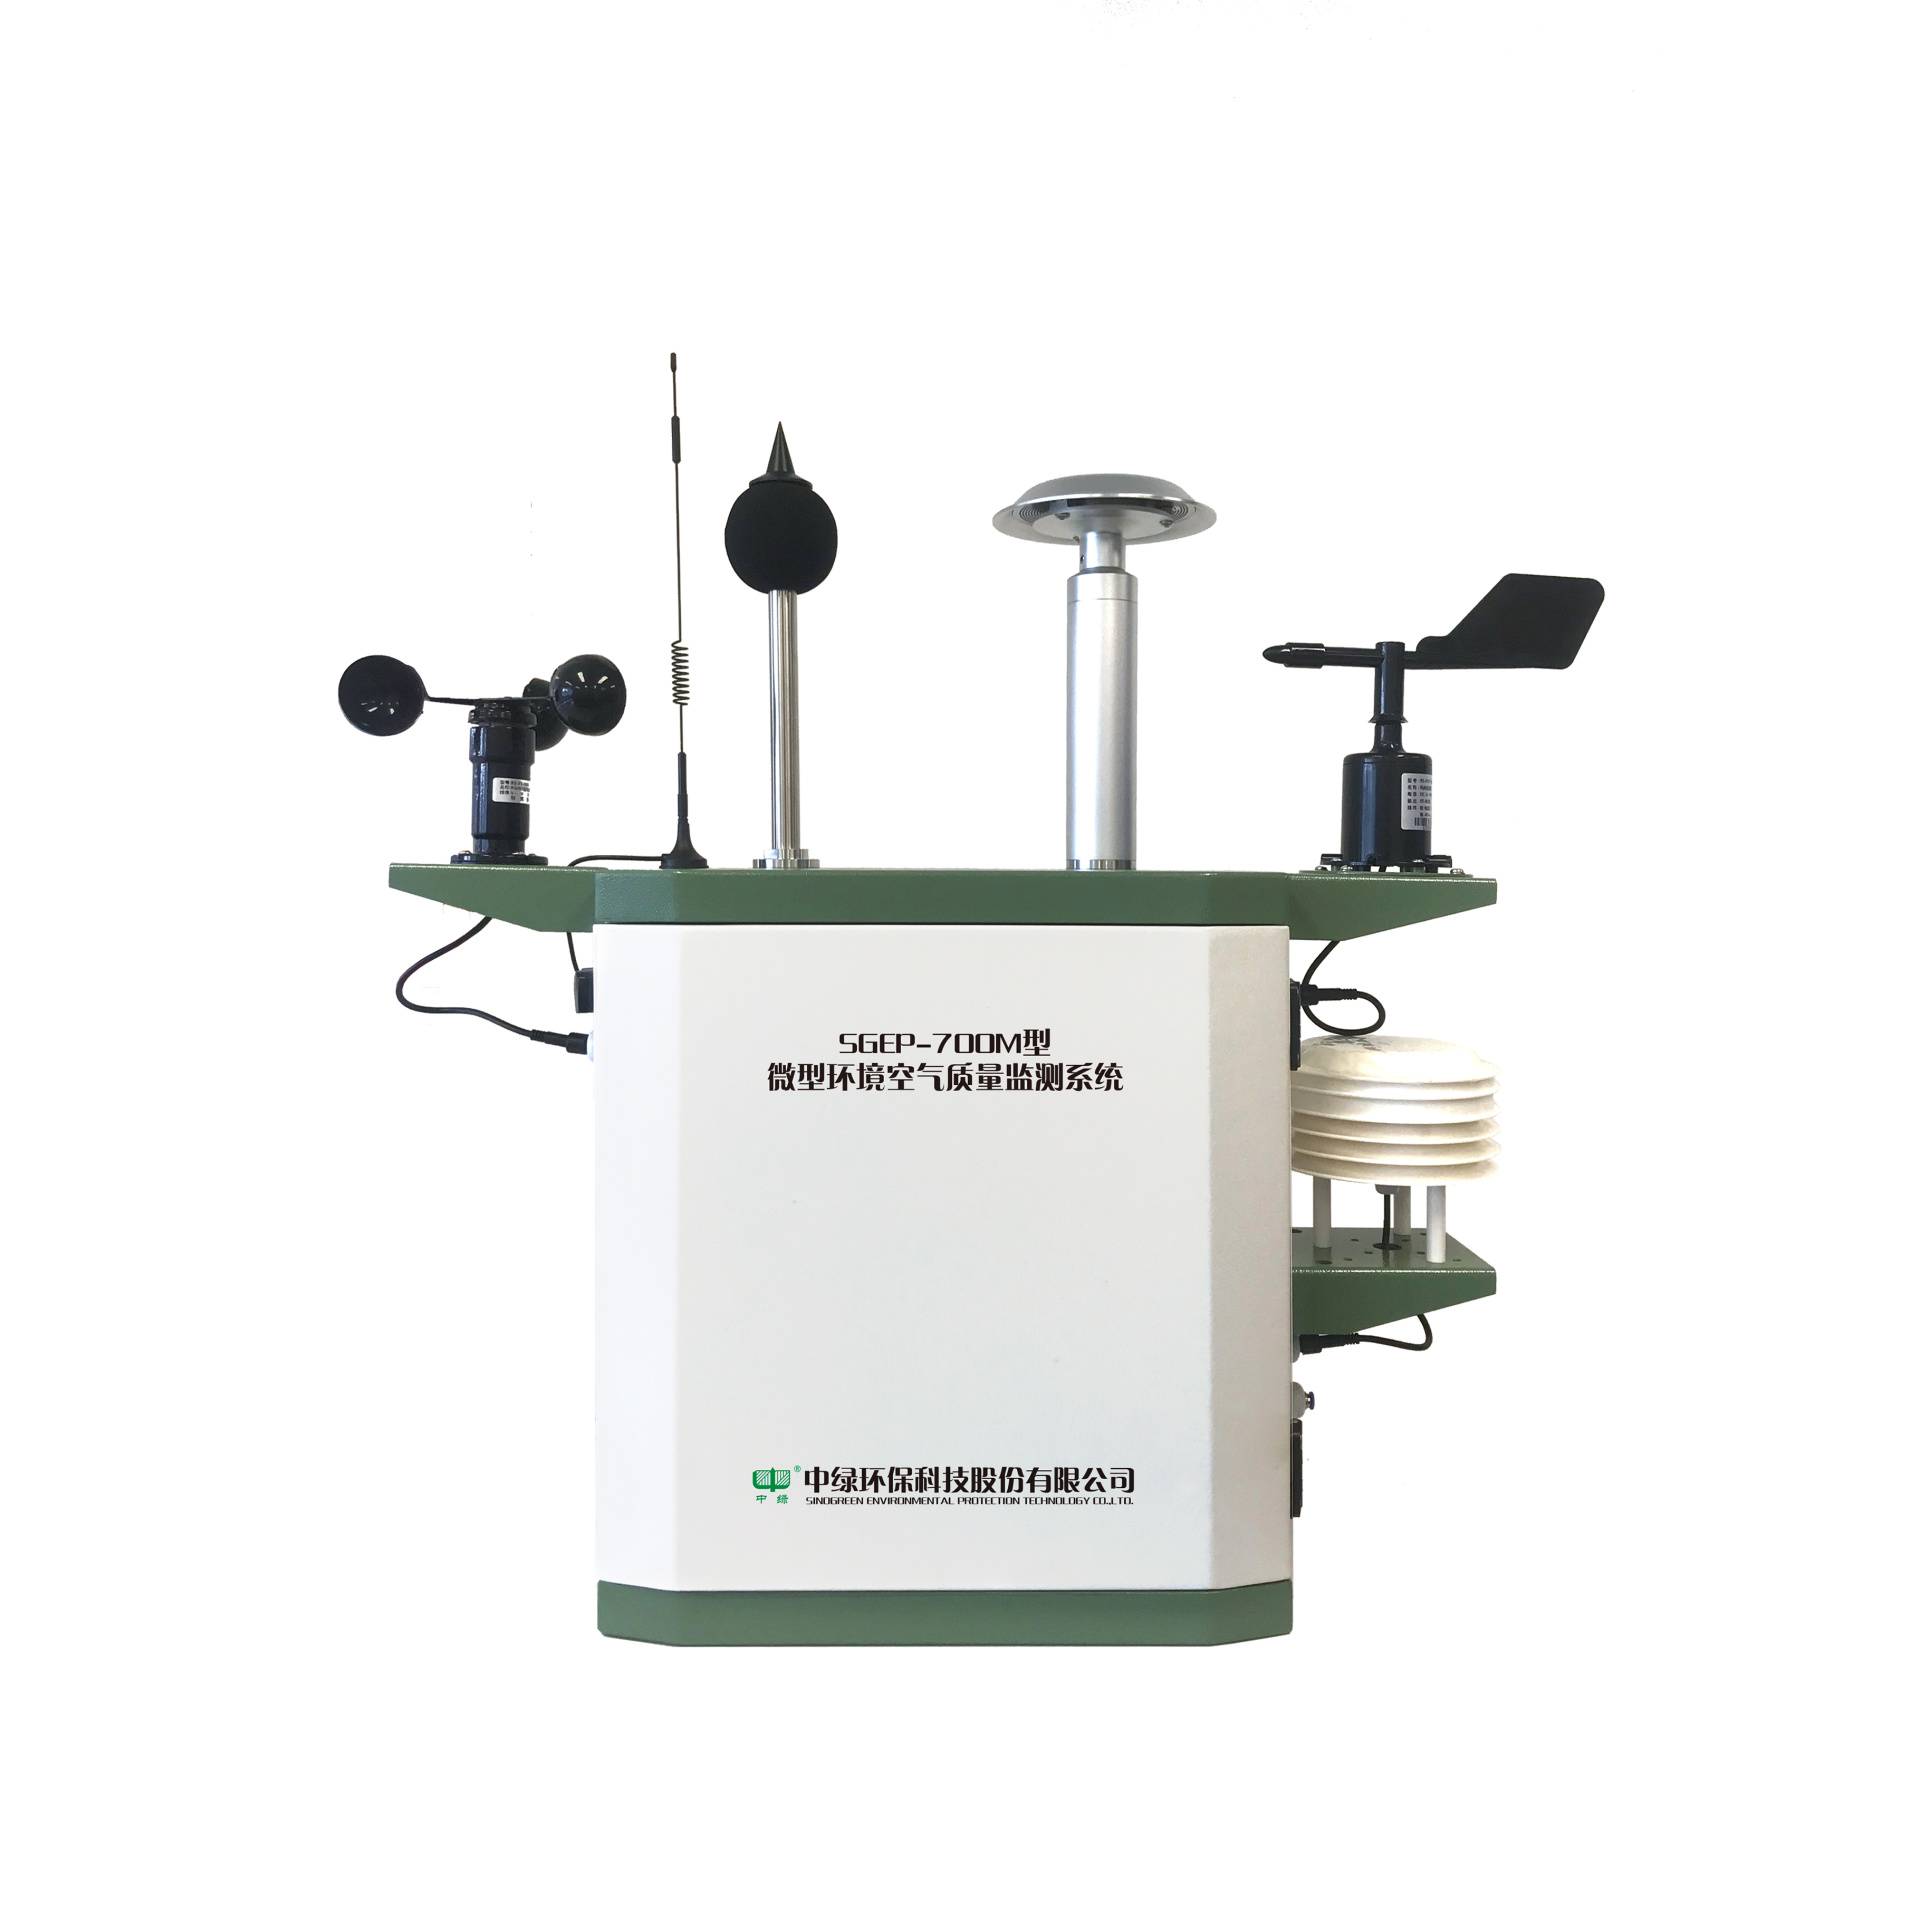 SGEP-700M 环境空气质量监测微型站